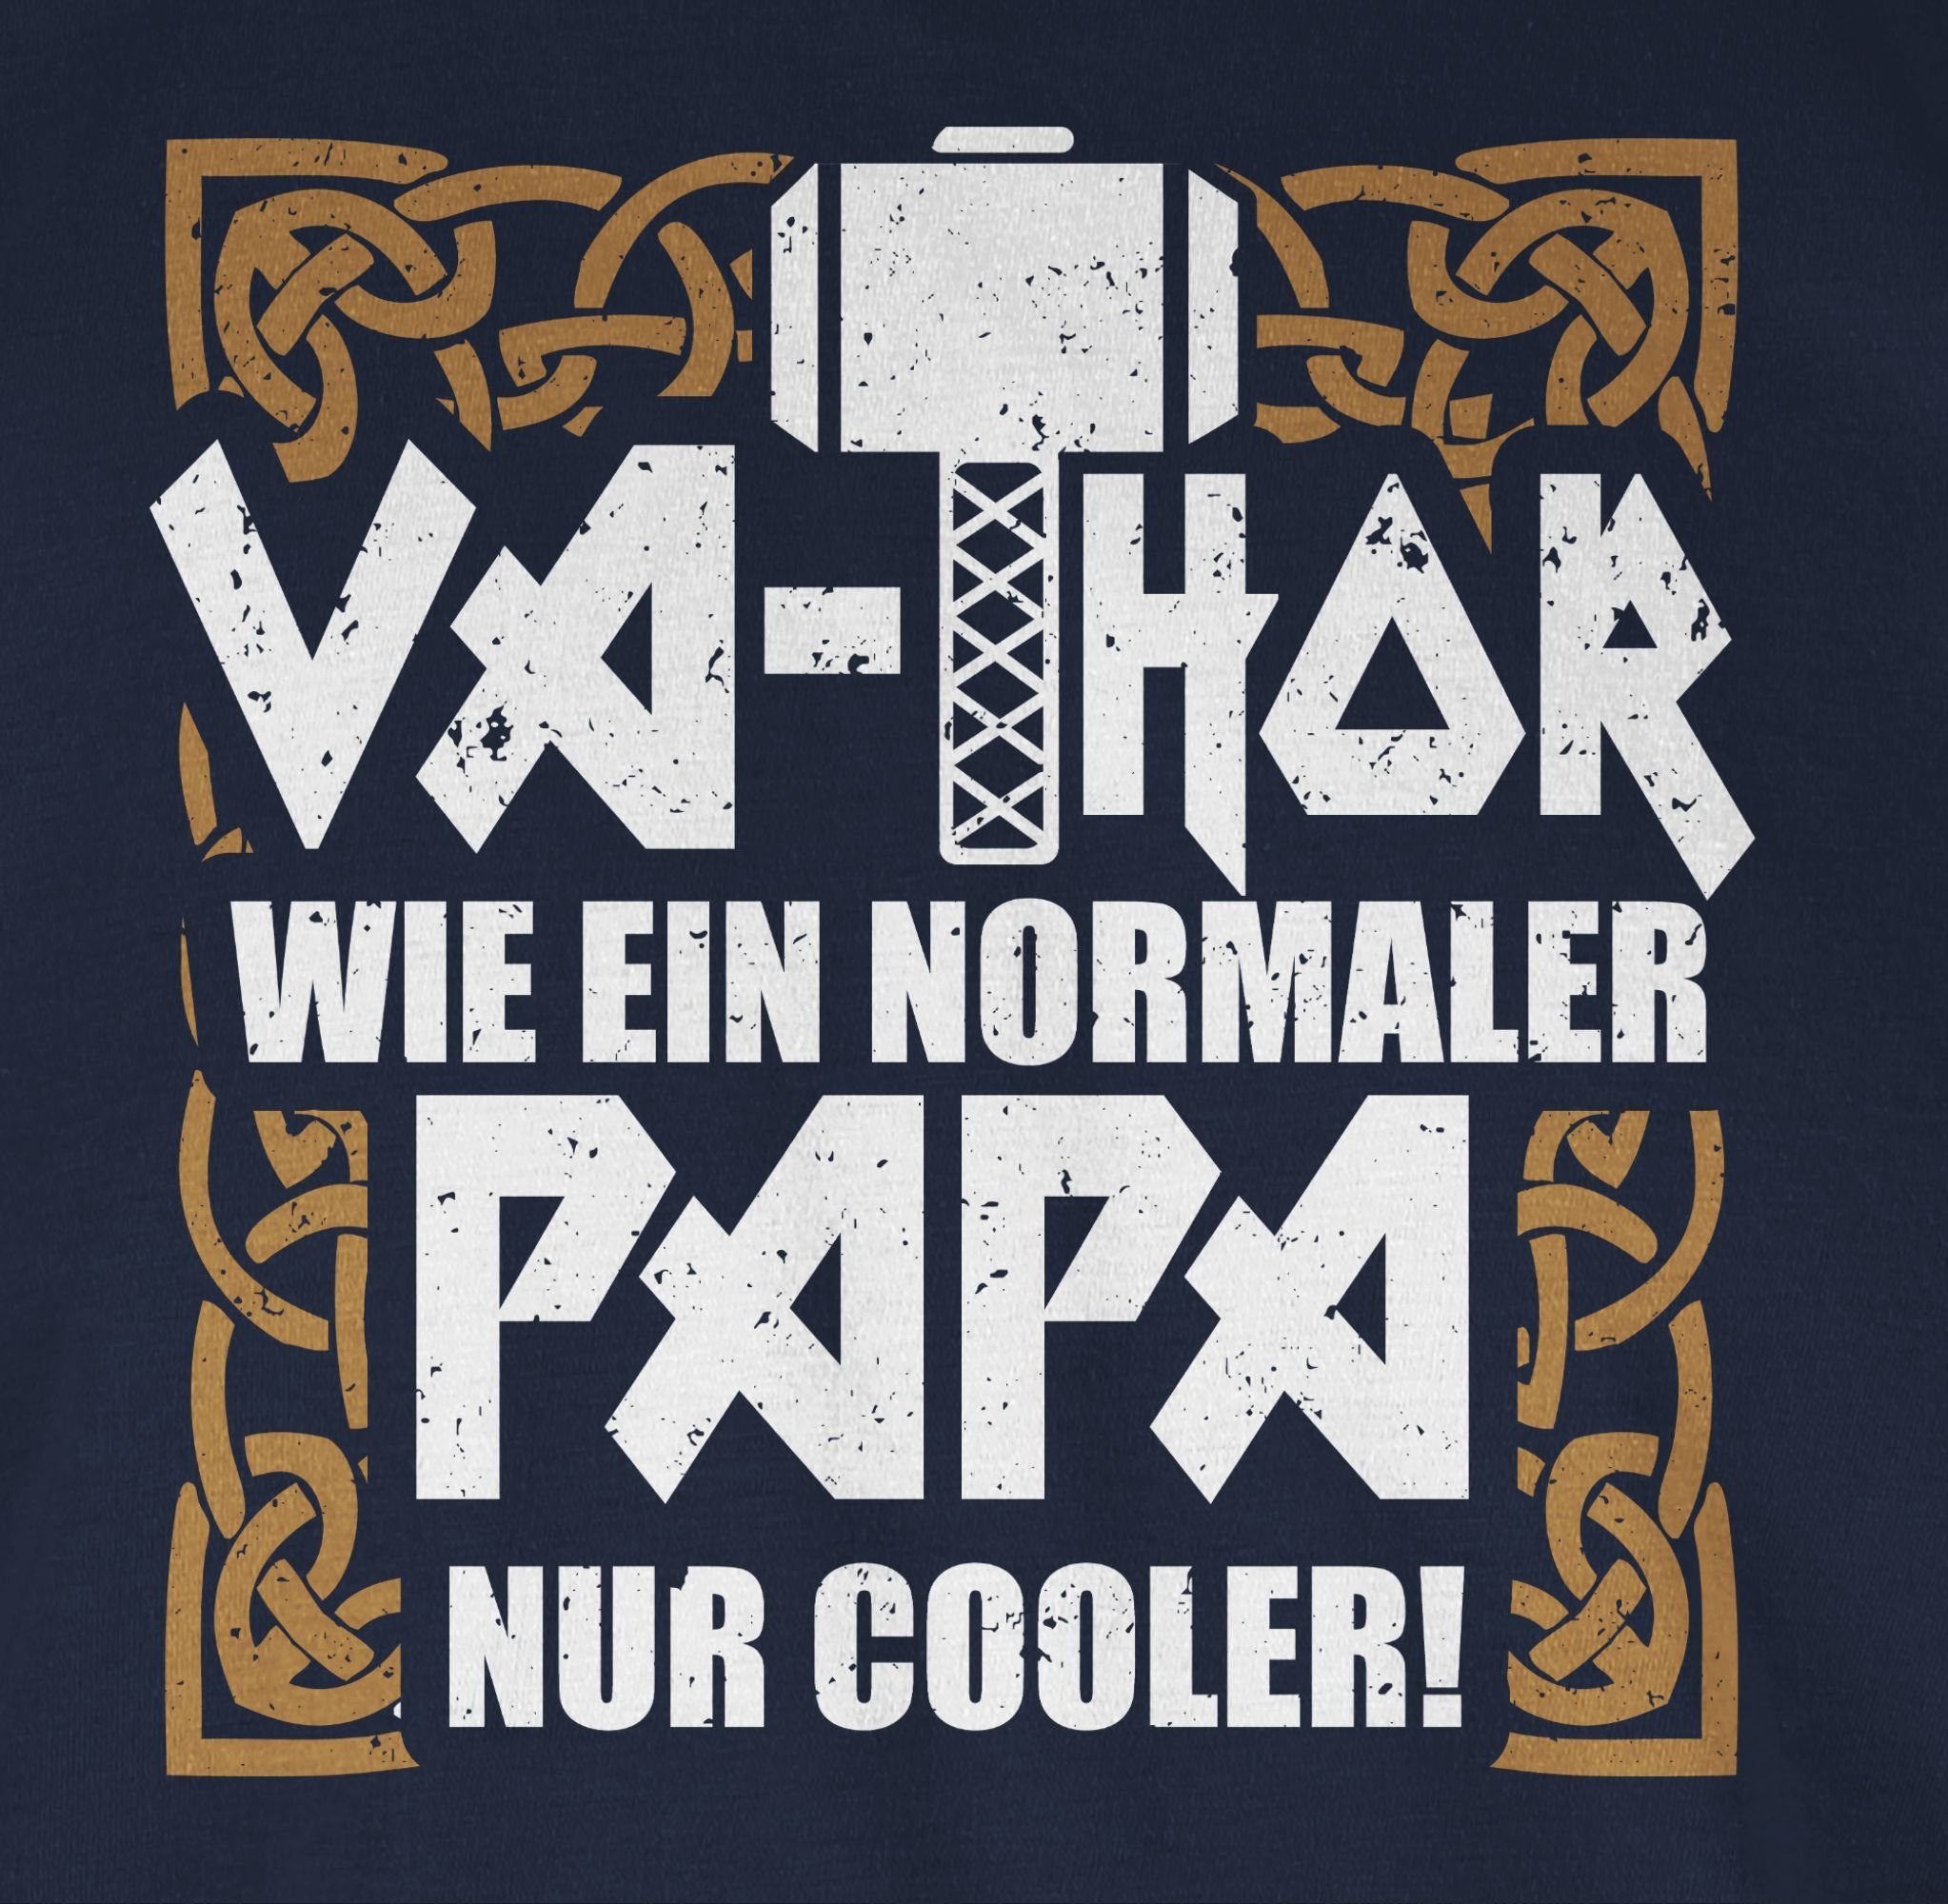 Geschenk T-Shirt nur cooler Shirtracer Blau Va-Thor Papa normaler für ein Vatertag wie 2 Papa Navy